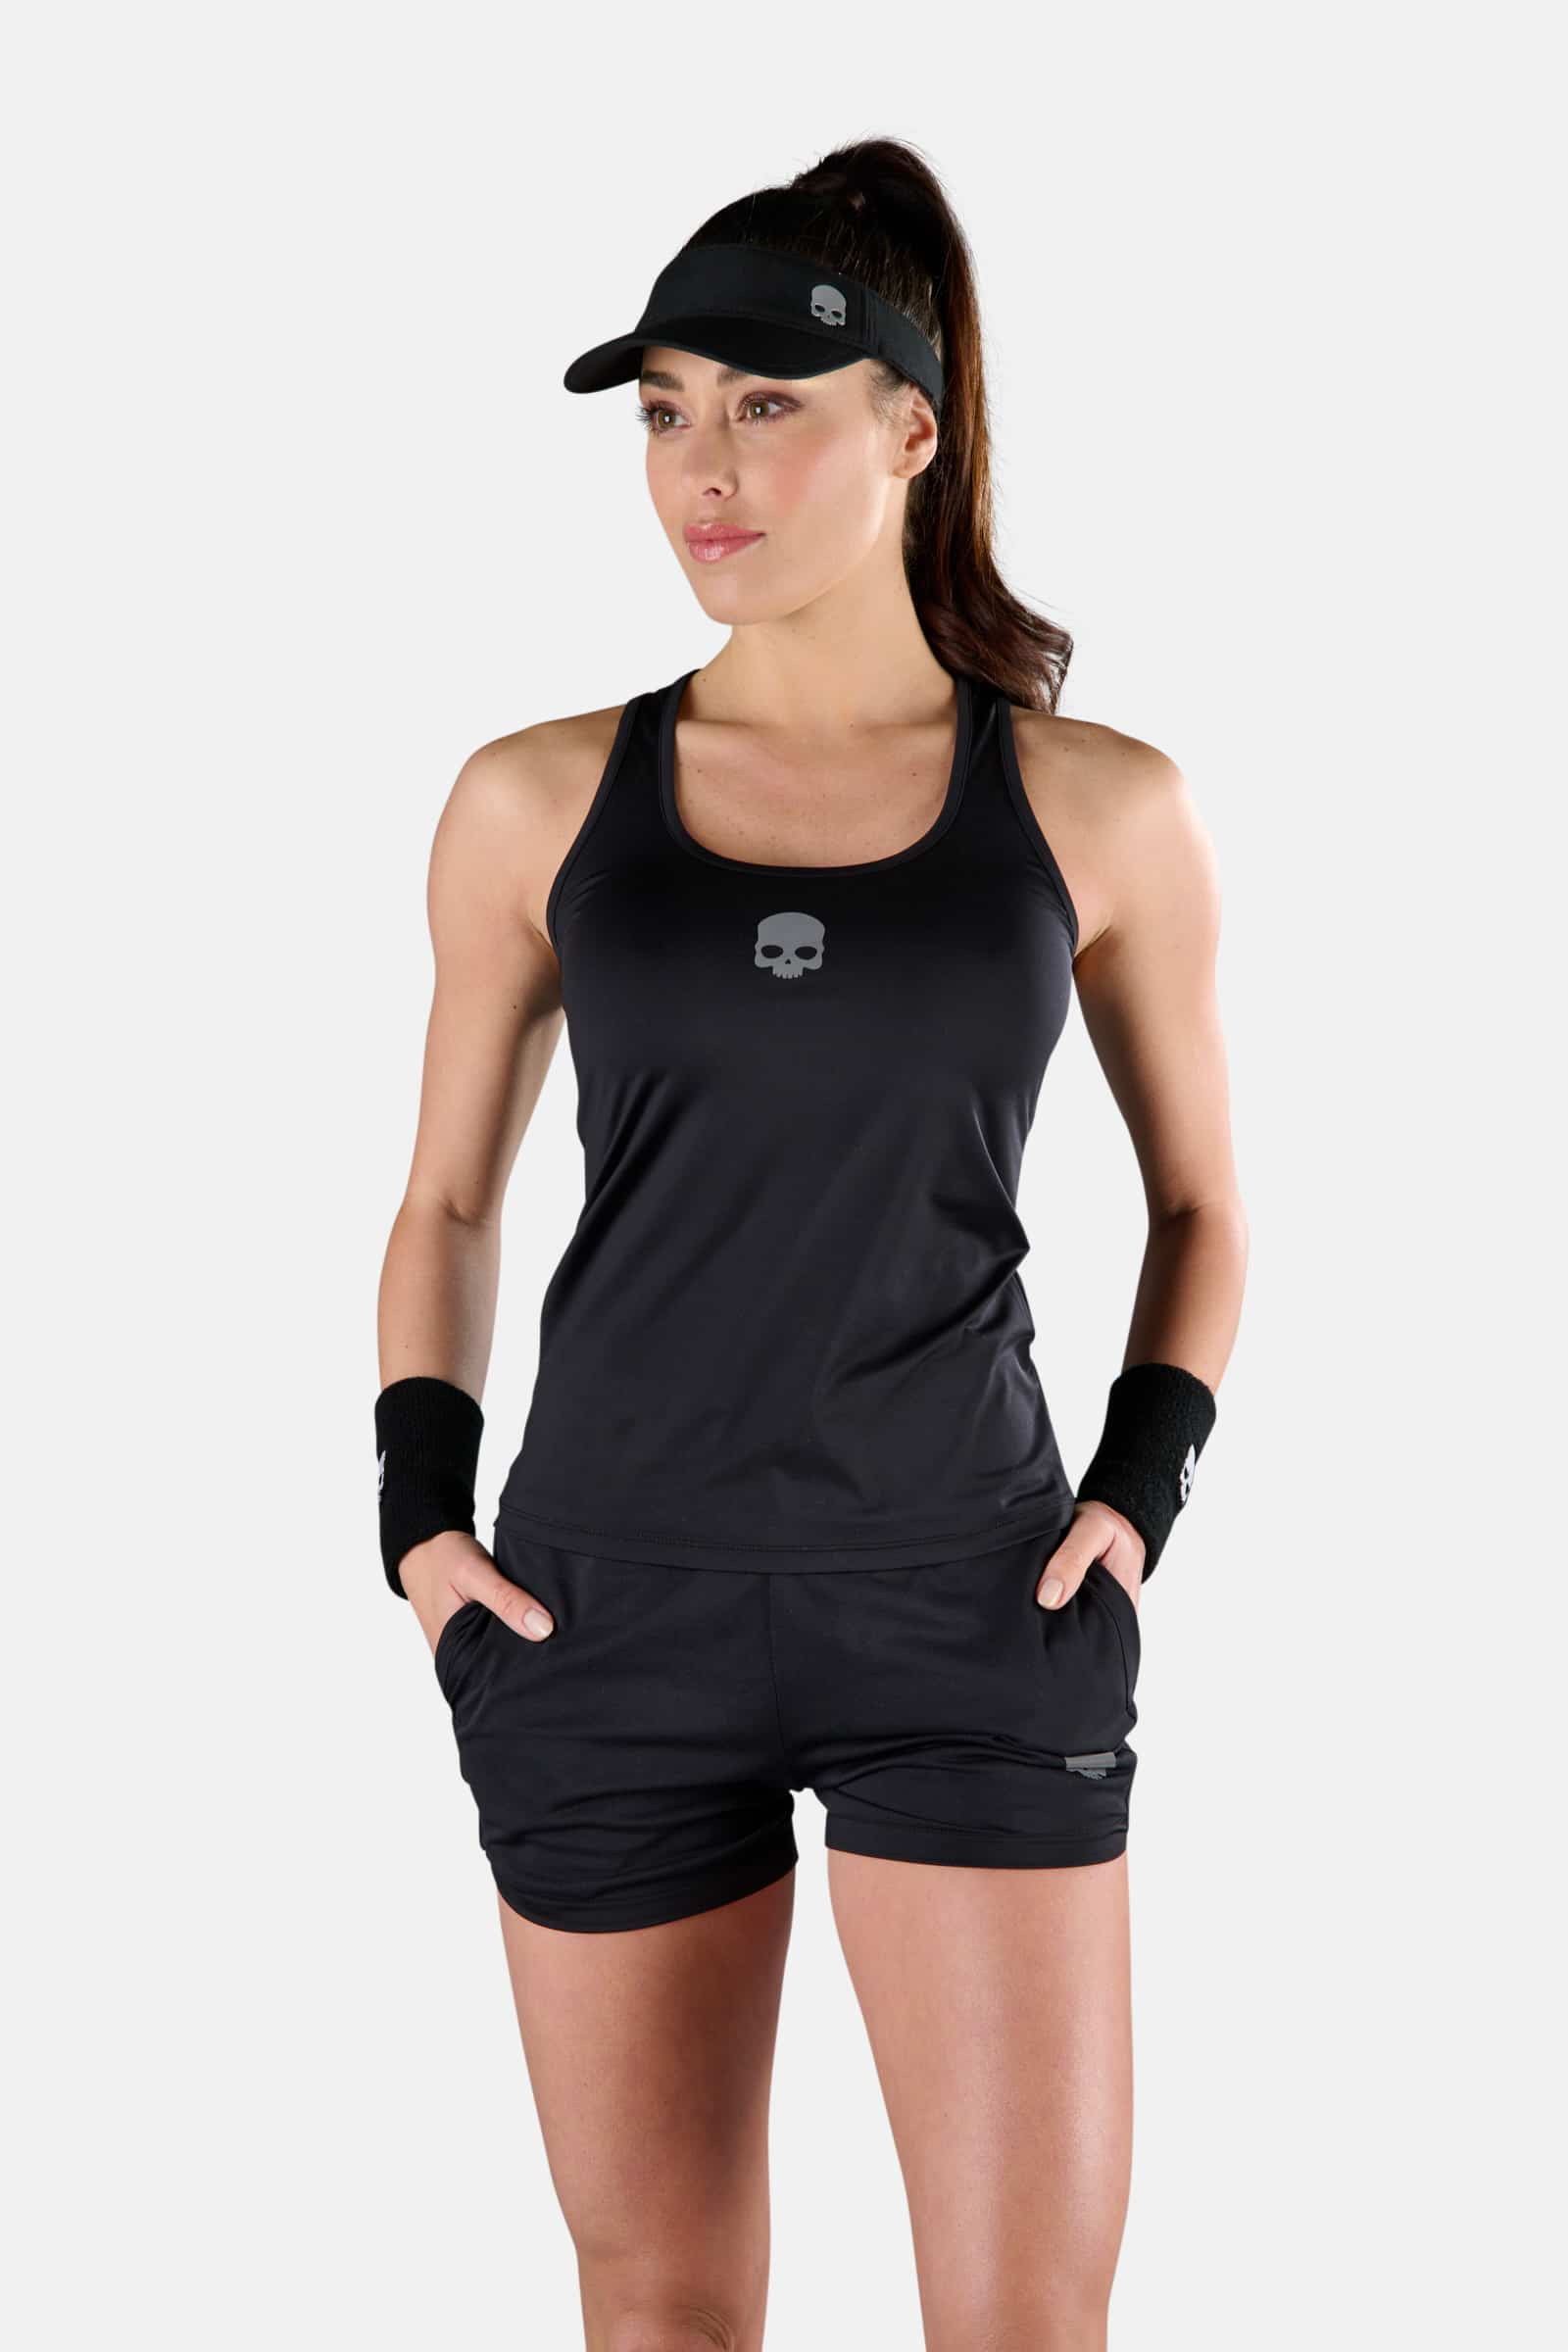 TECH TANK TOP - Abbigliamento - Abbigliamento sportivo | Hydrogen